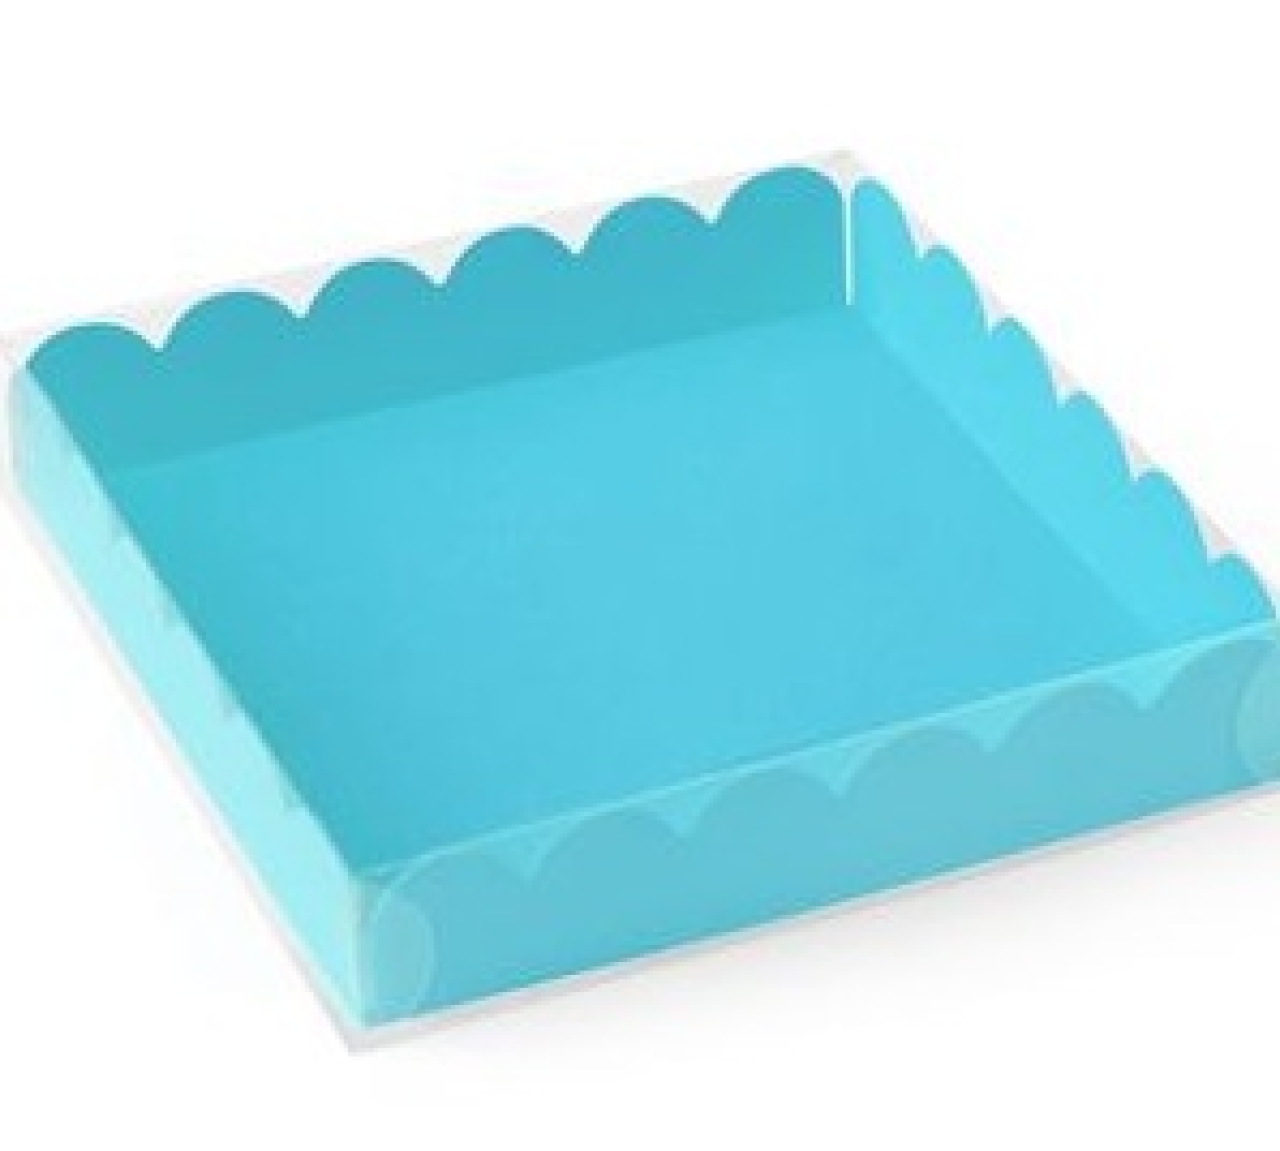 Macarons-Schachtel mit Deckel, für 9 Macarons/Kekse, hellblau-türkis